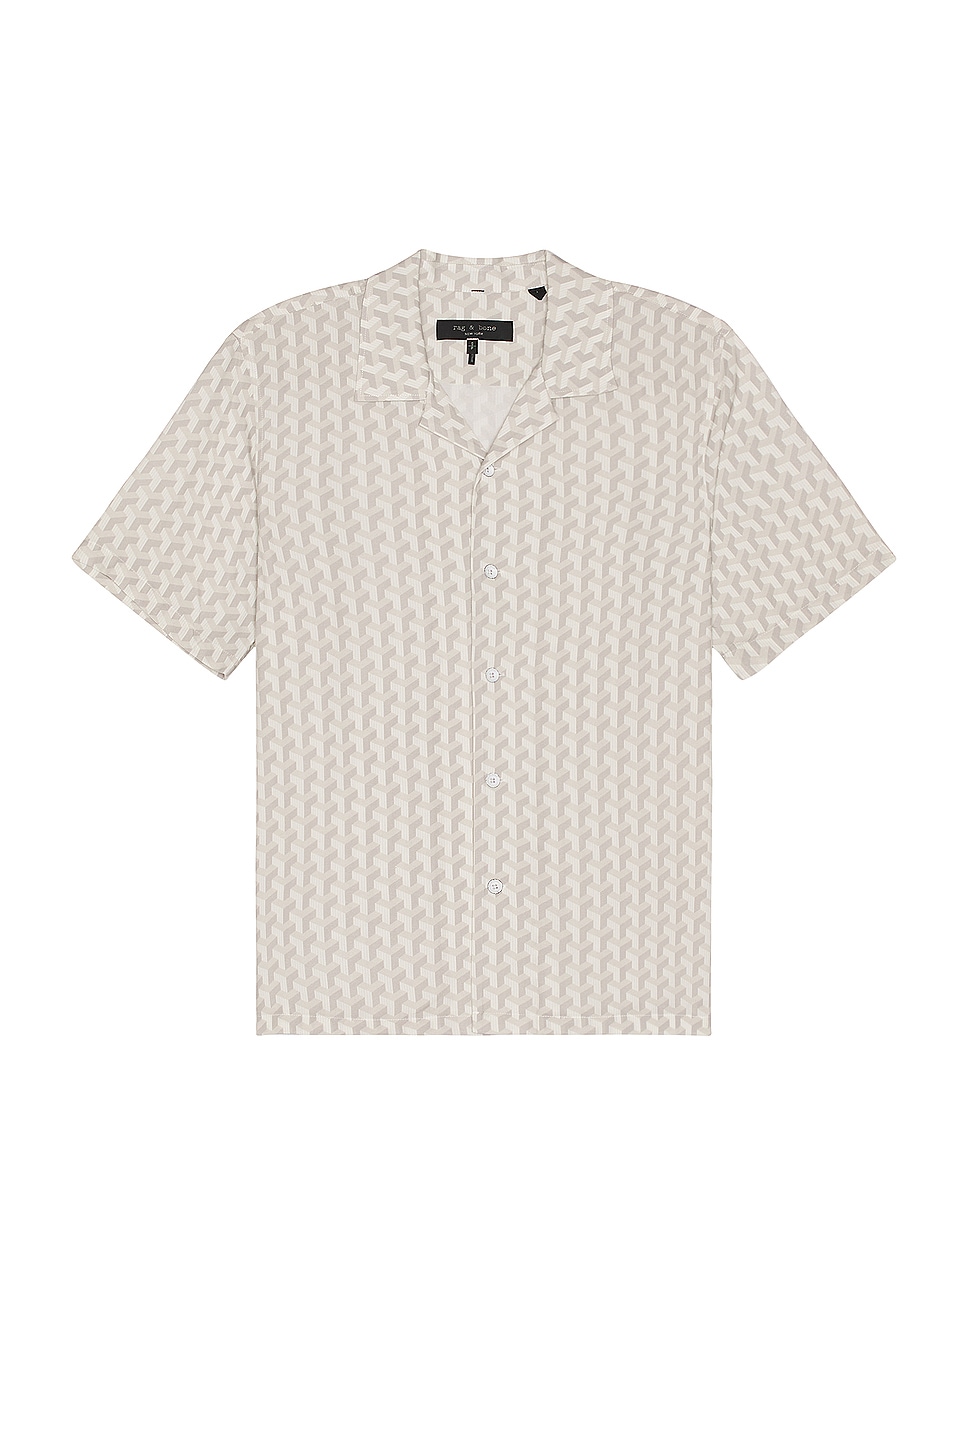 Image 1 of Rag & Bone Printed Avery Shirt in White Geo